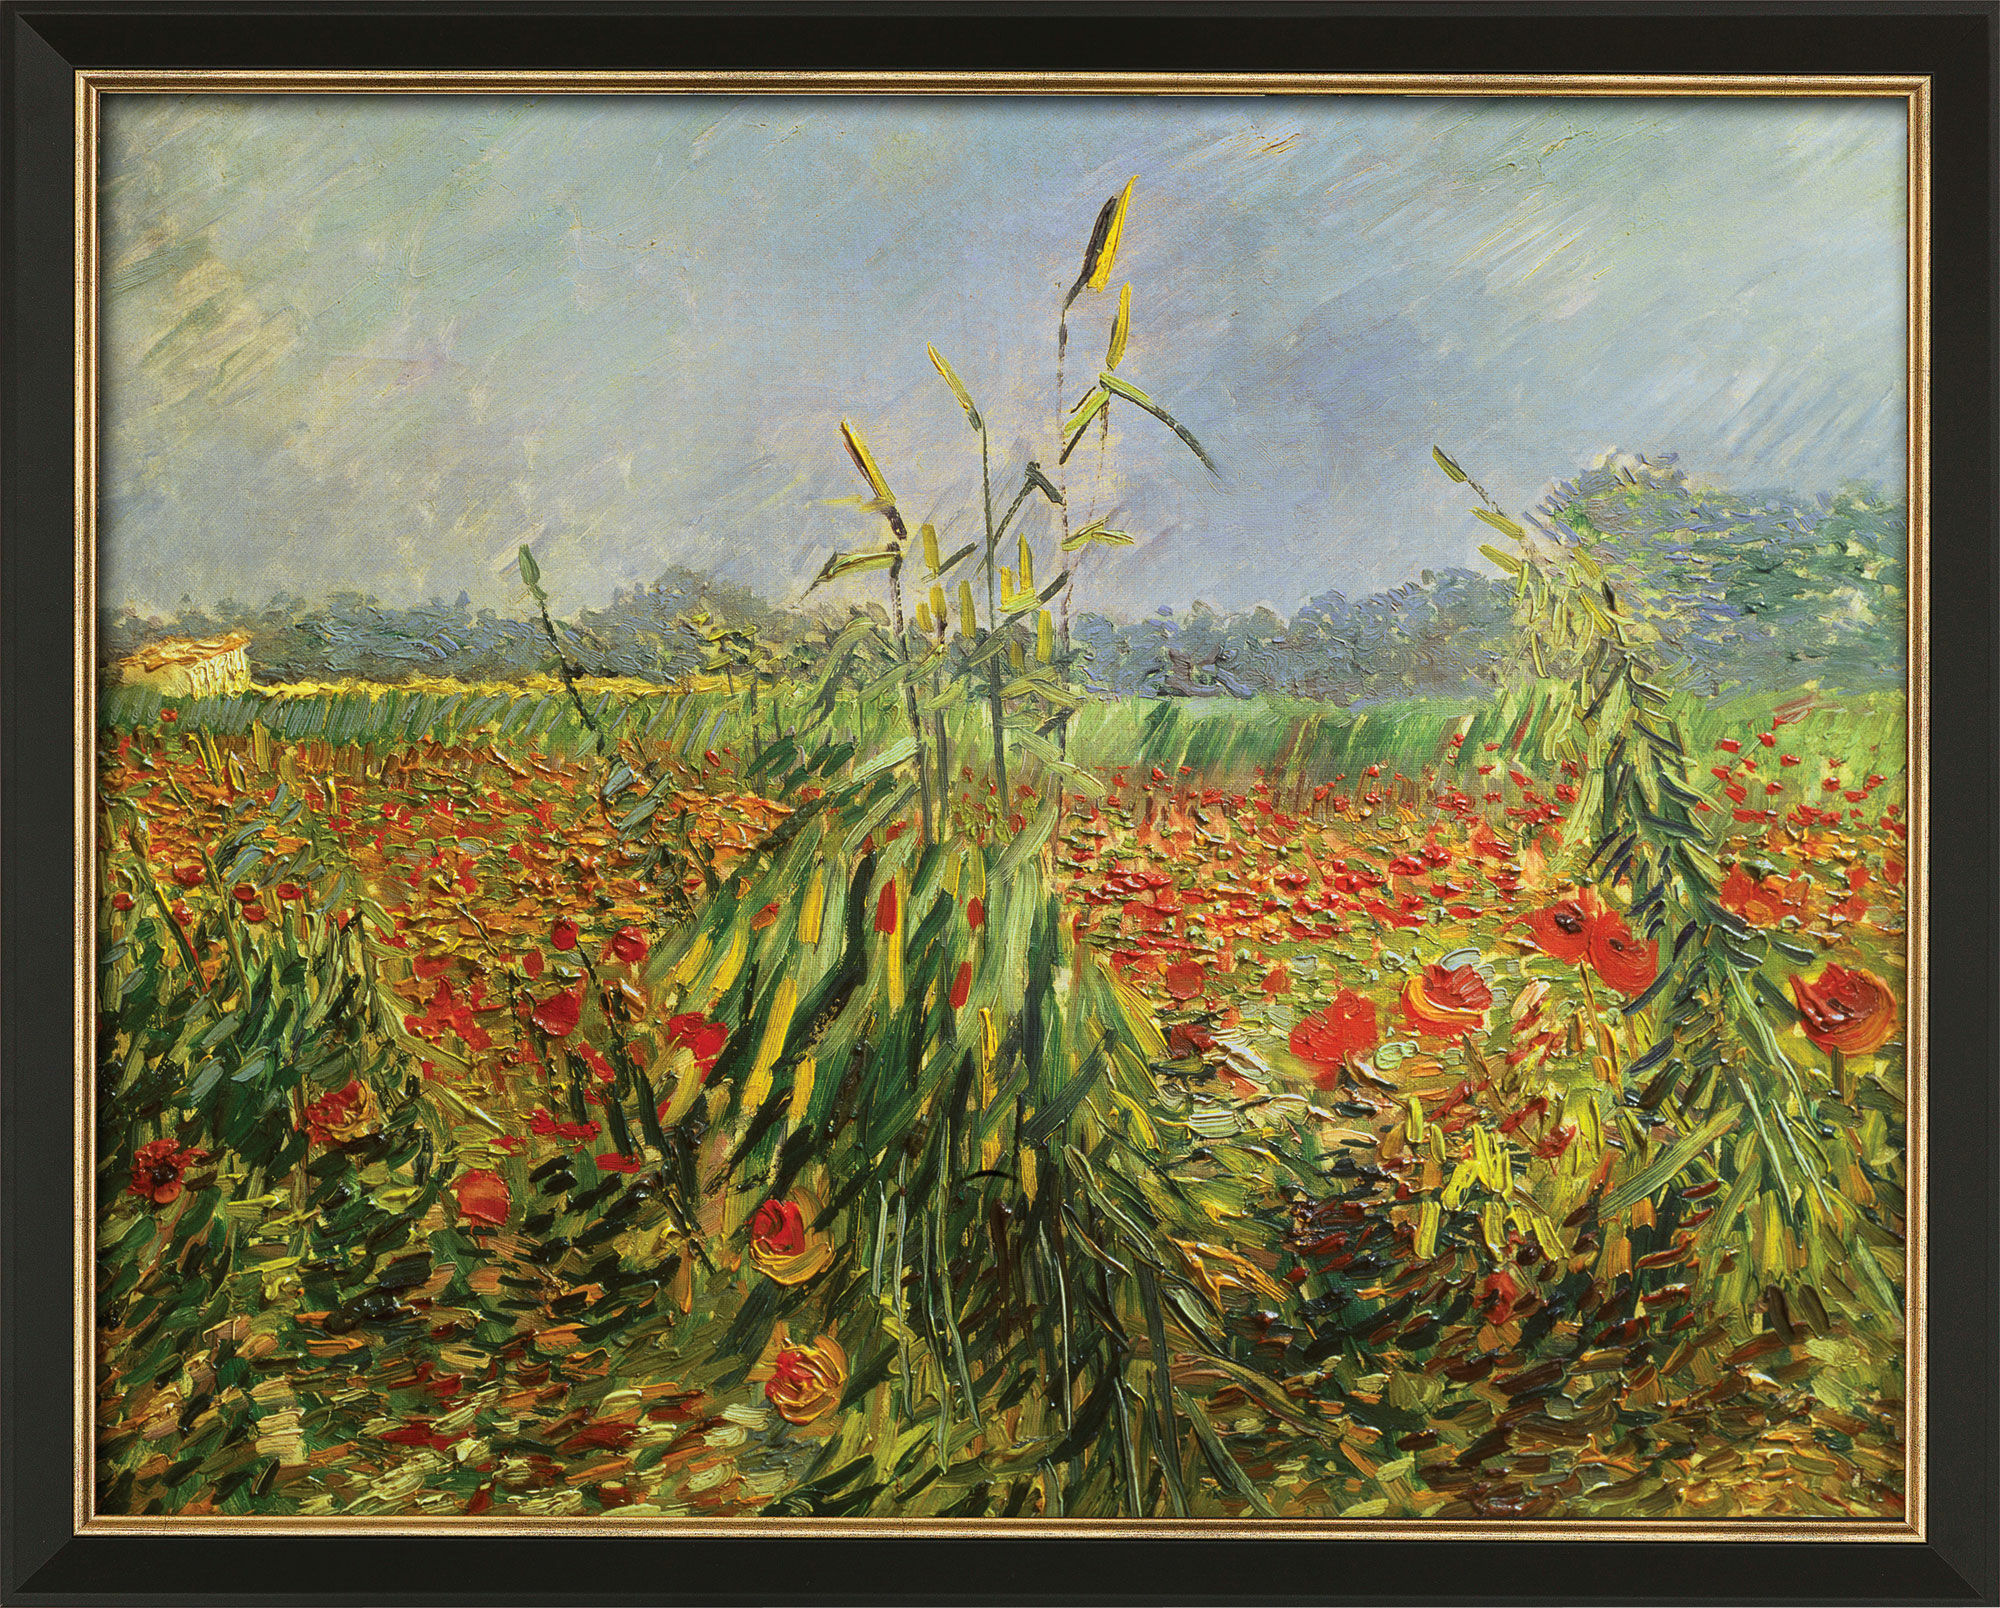 Billede "Grønne majsstængler" (1888), indrammet von Vincent van Gogh